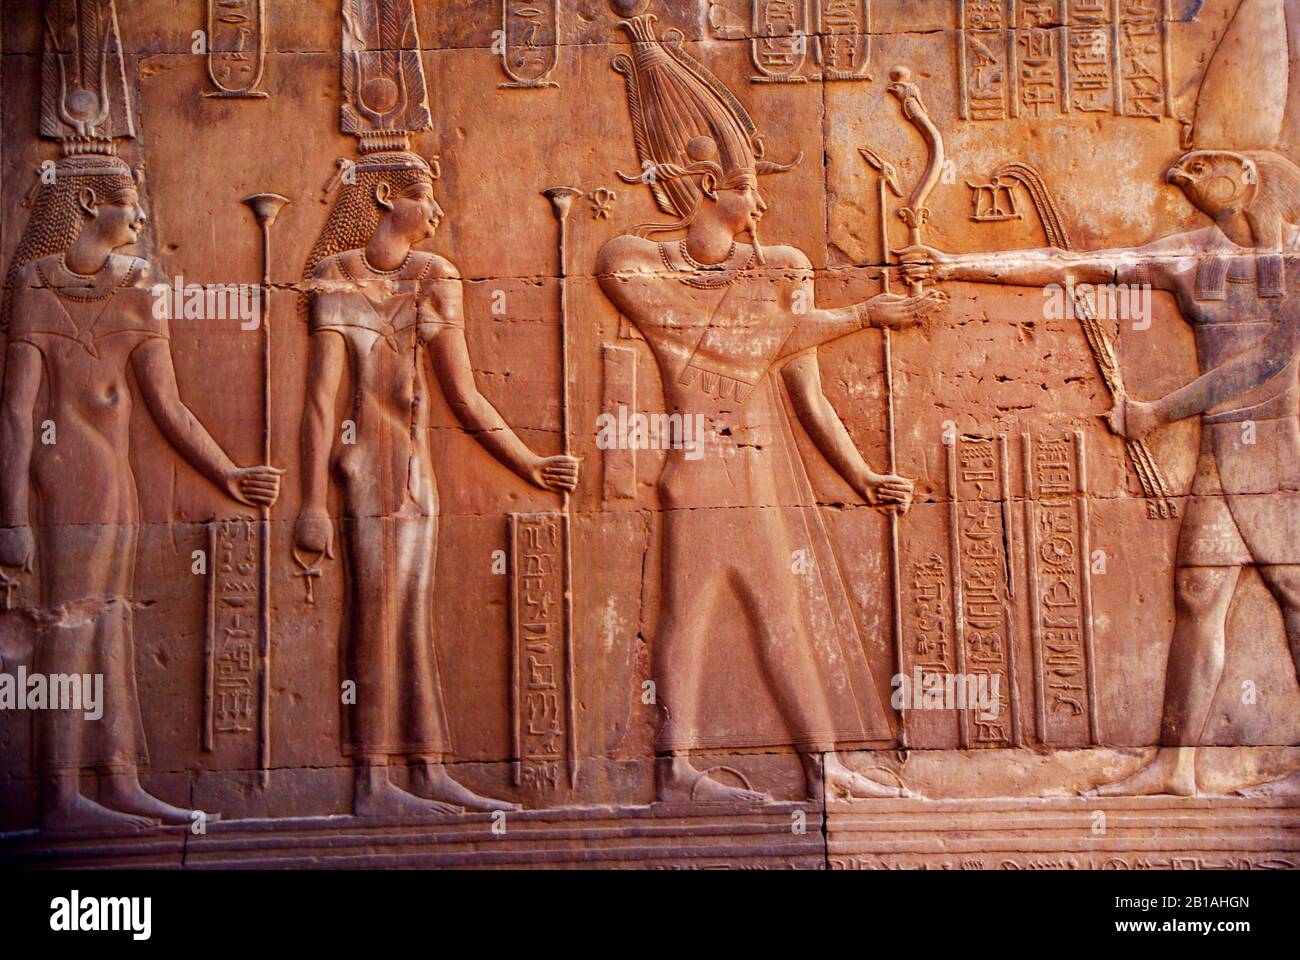 Vue sur un mur du temple avec sculptures de dieux égyptiens Banque D'Images